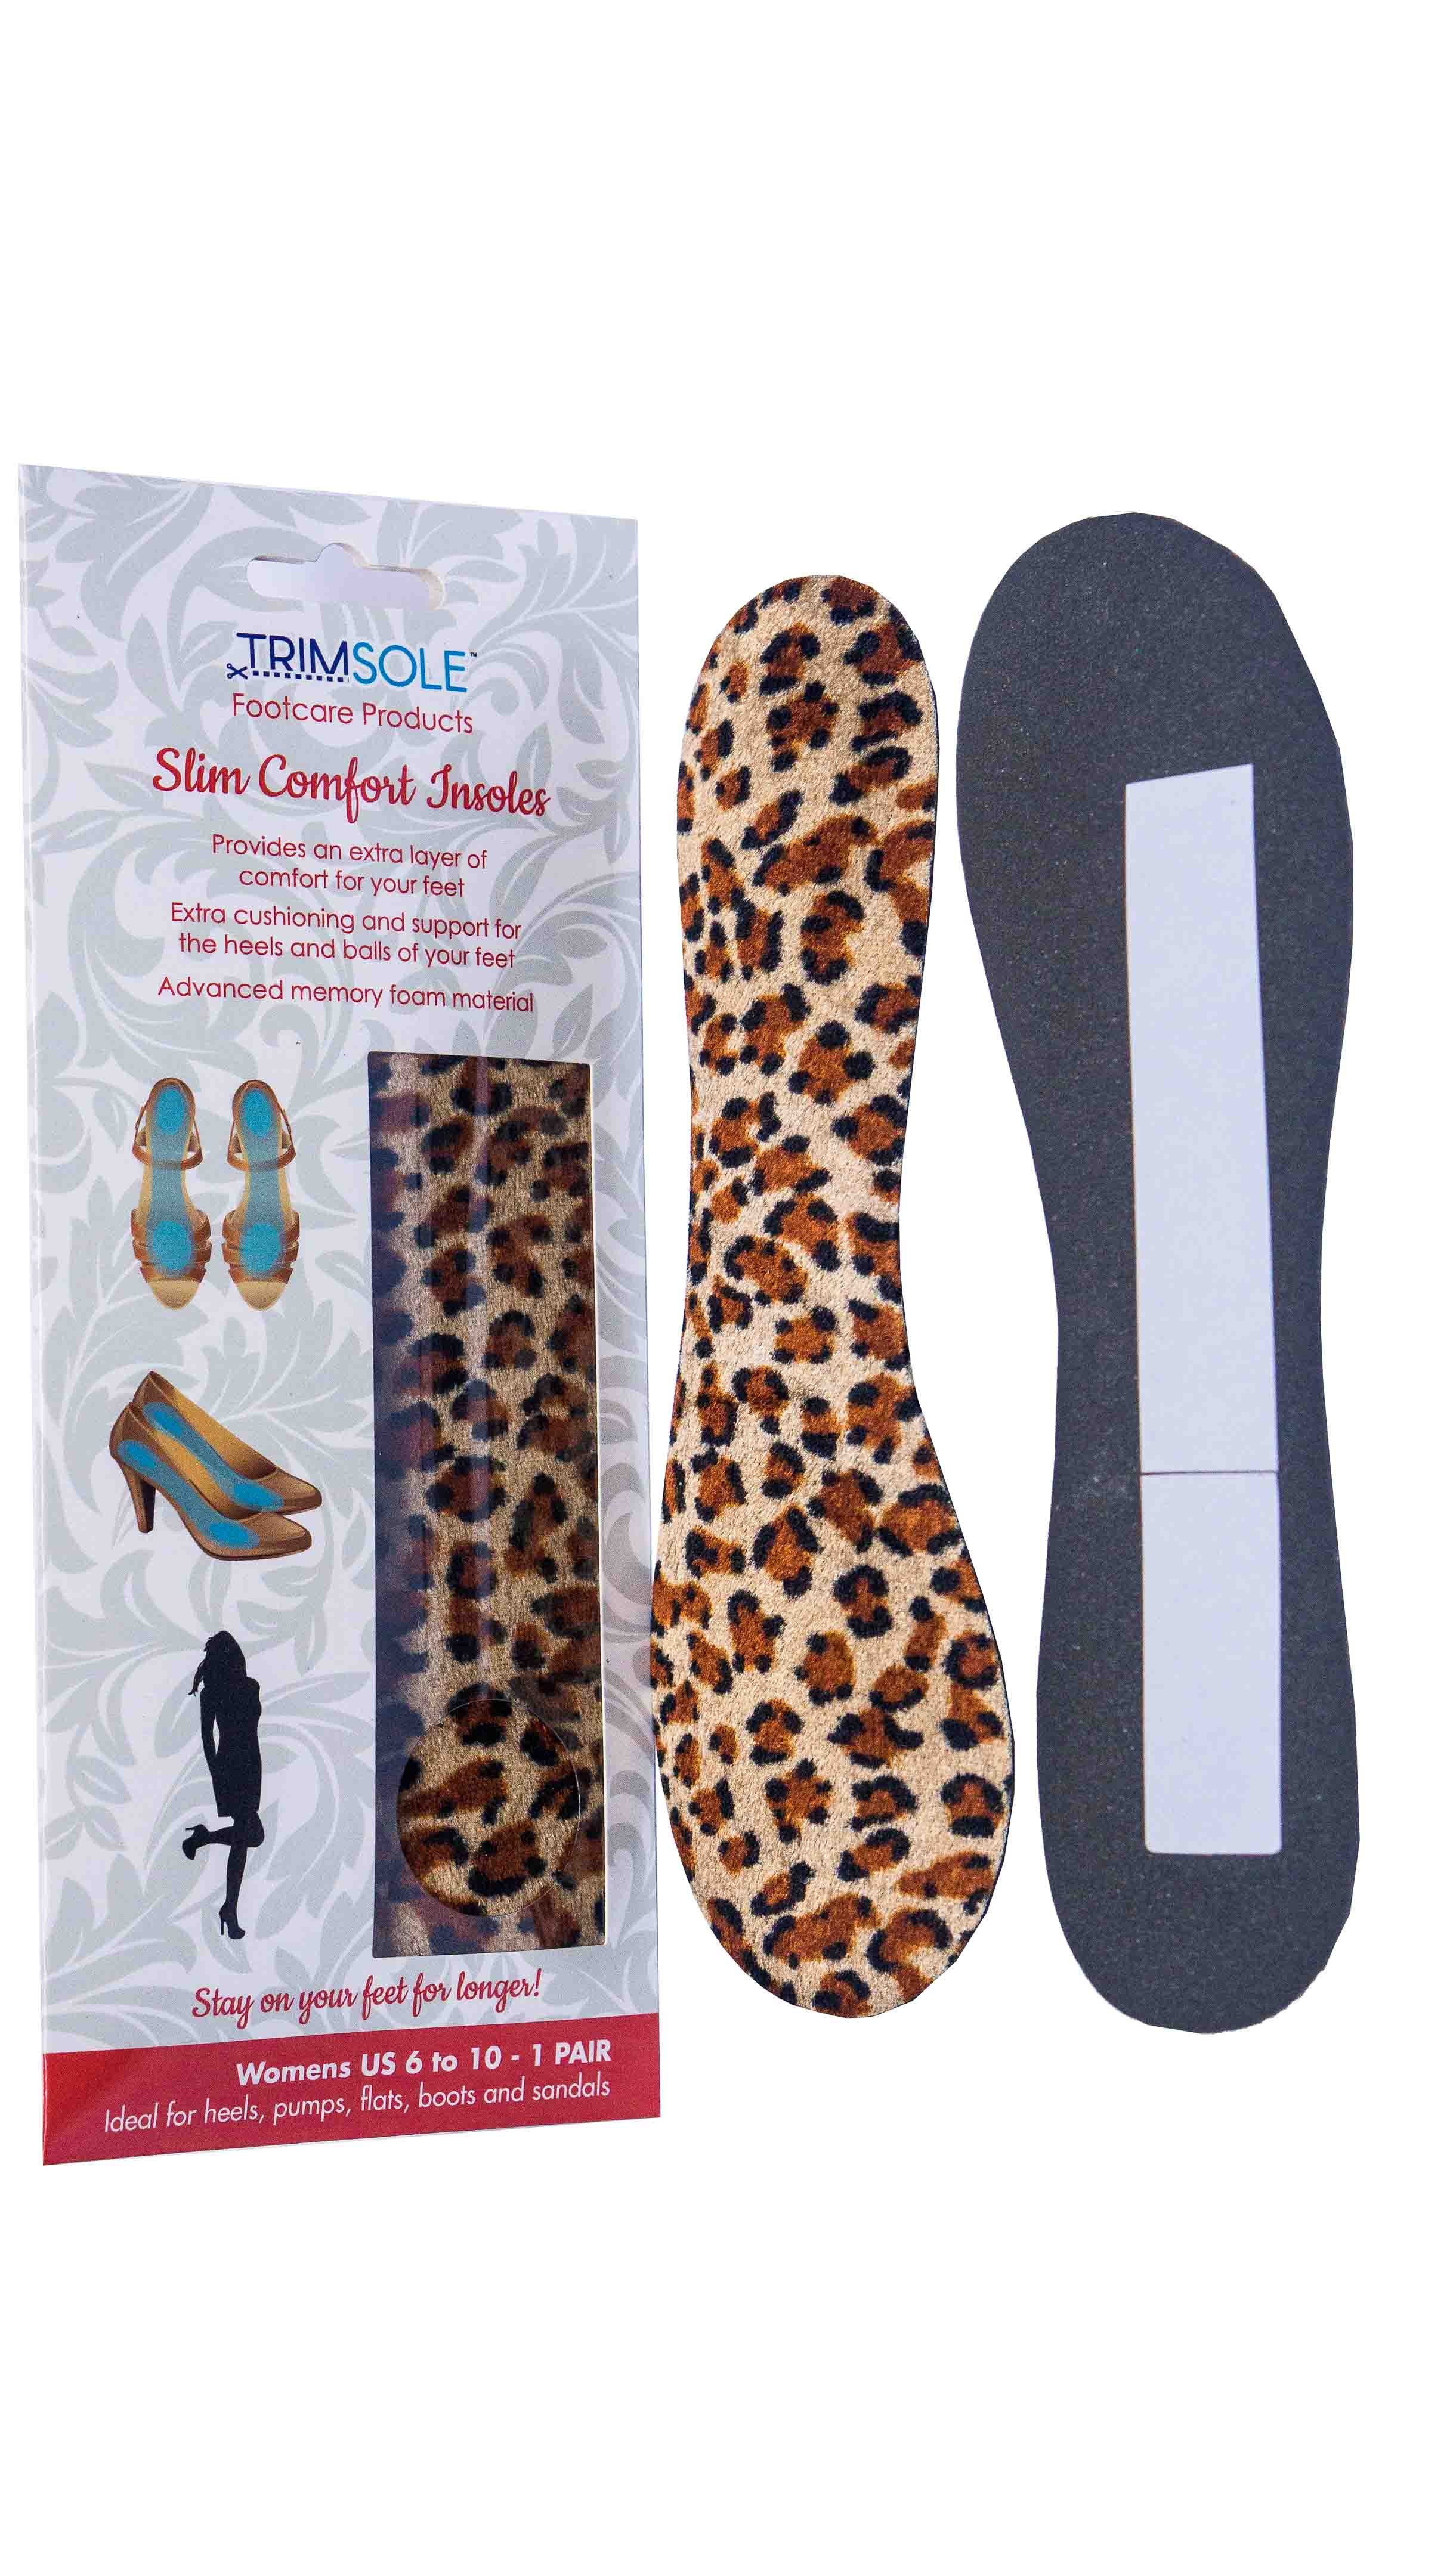 TRIMSOLE Slim Comfort Insoles for High Heels